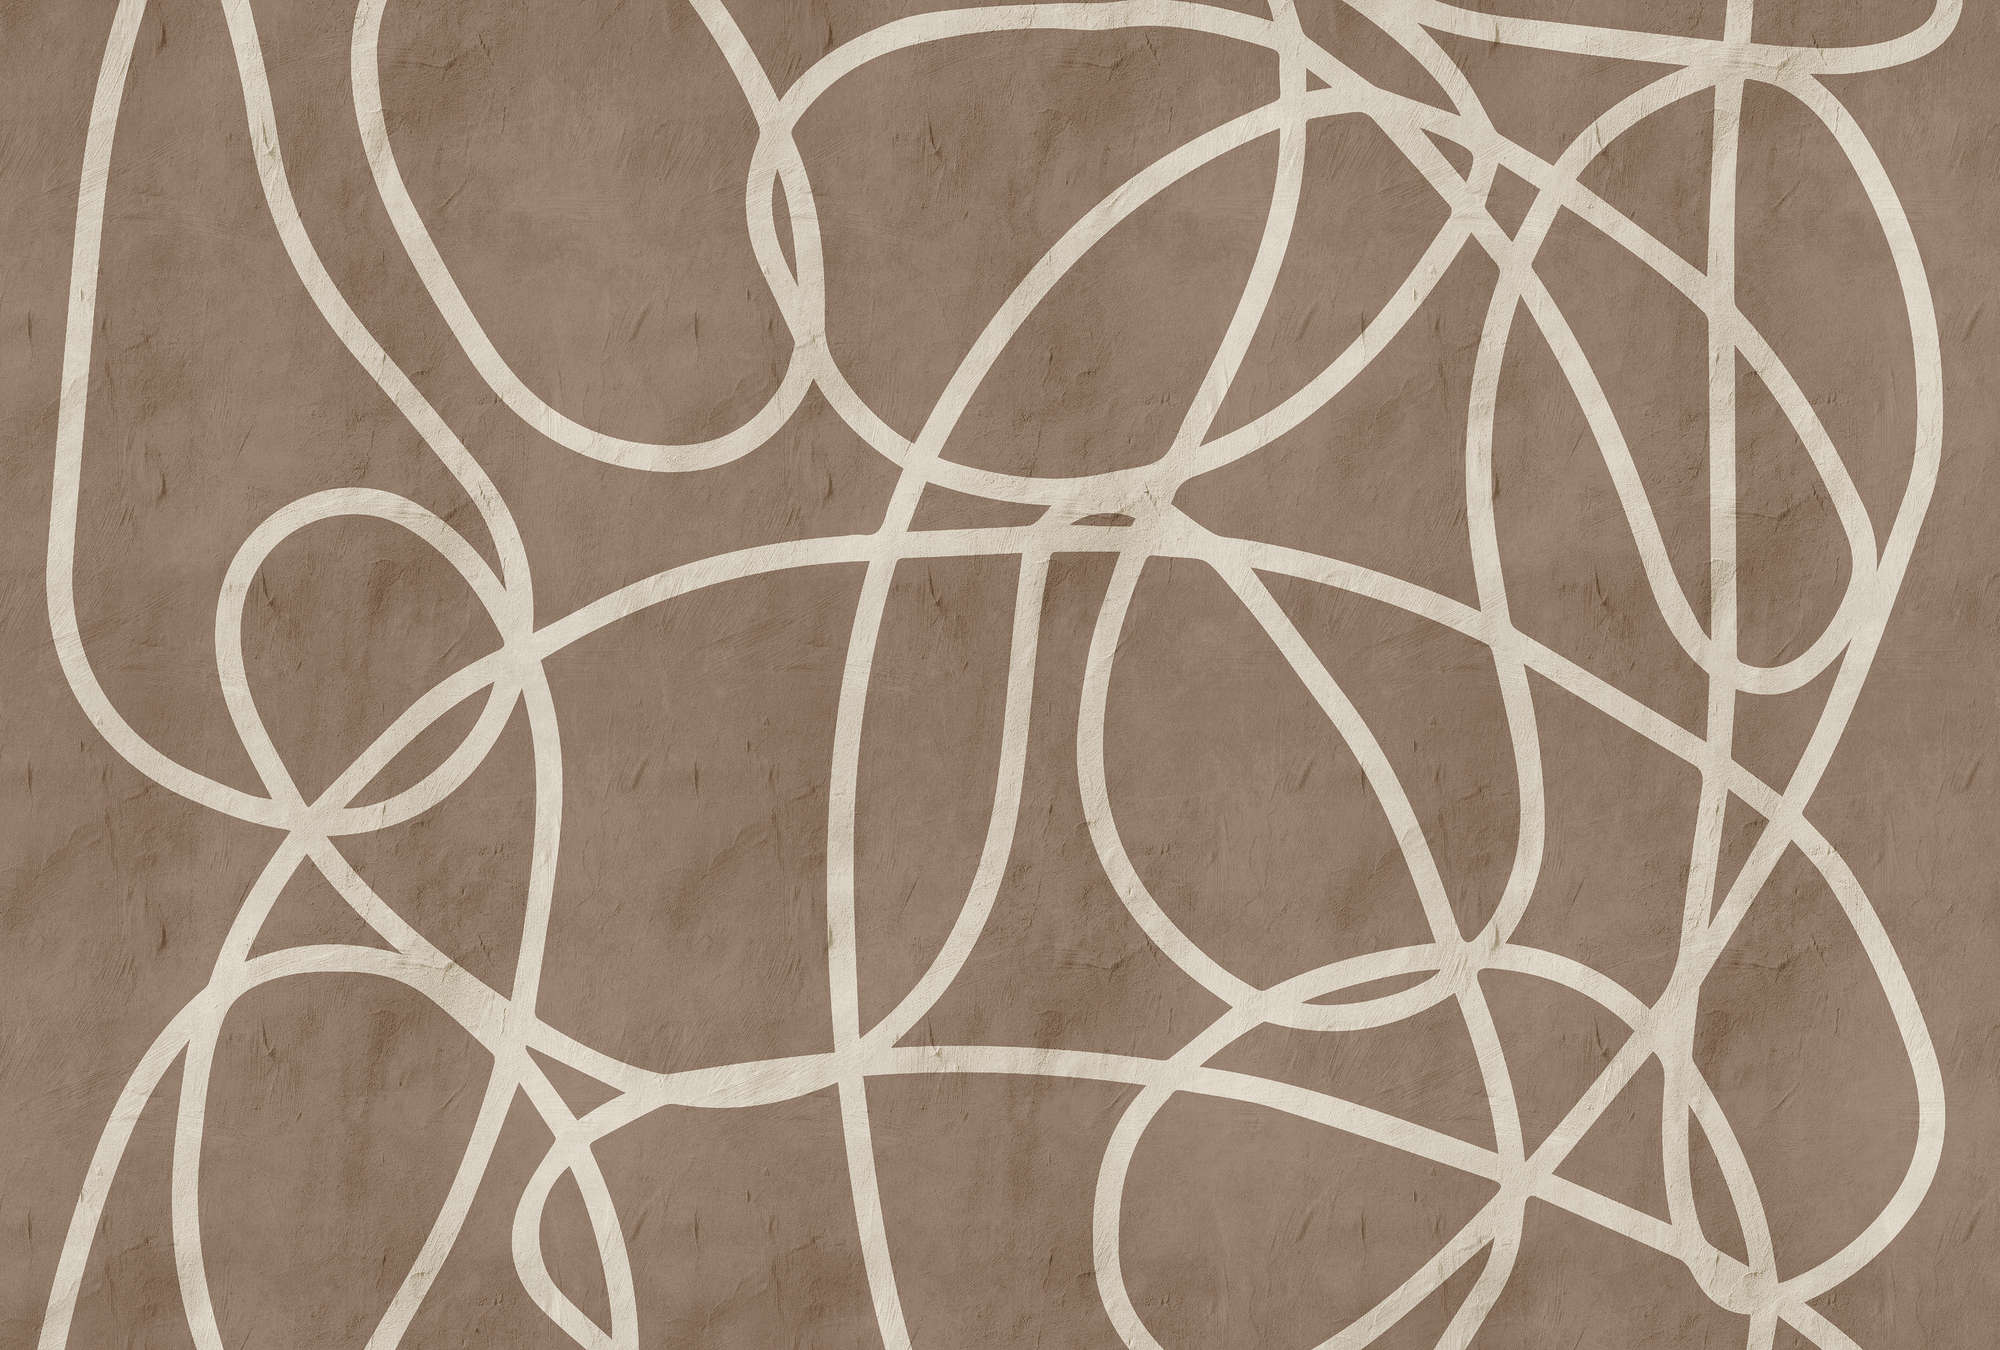             Serengeti 3 - Papier peint marron-beige mur d'argile avec design de lignes
        